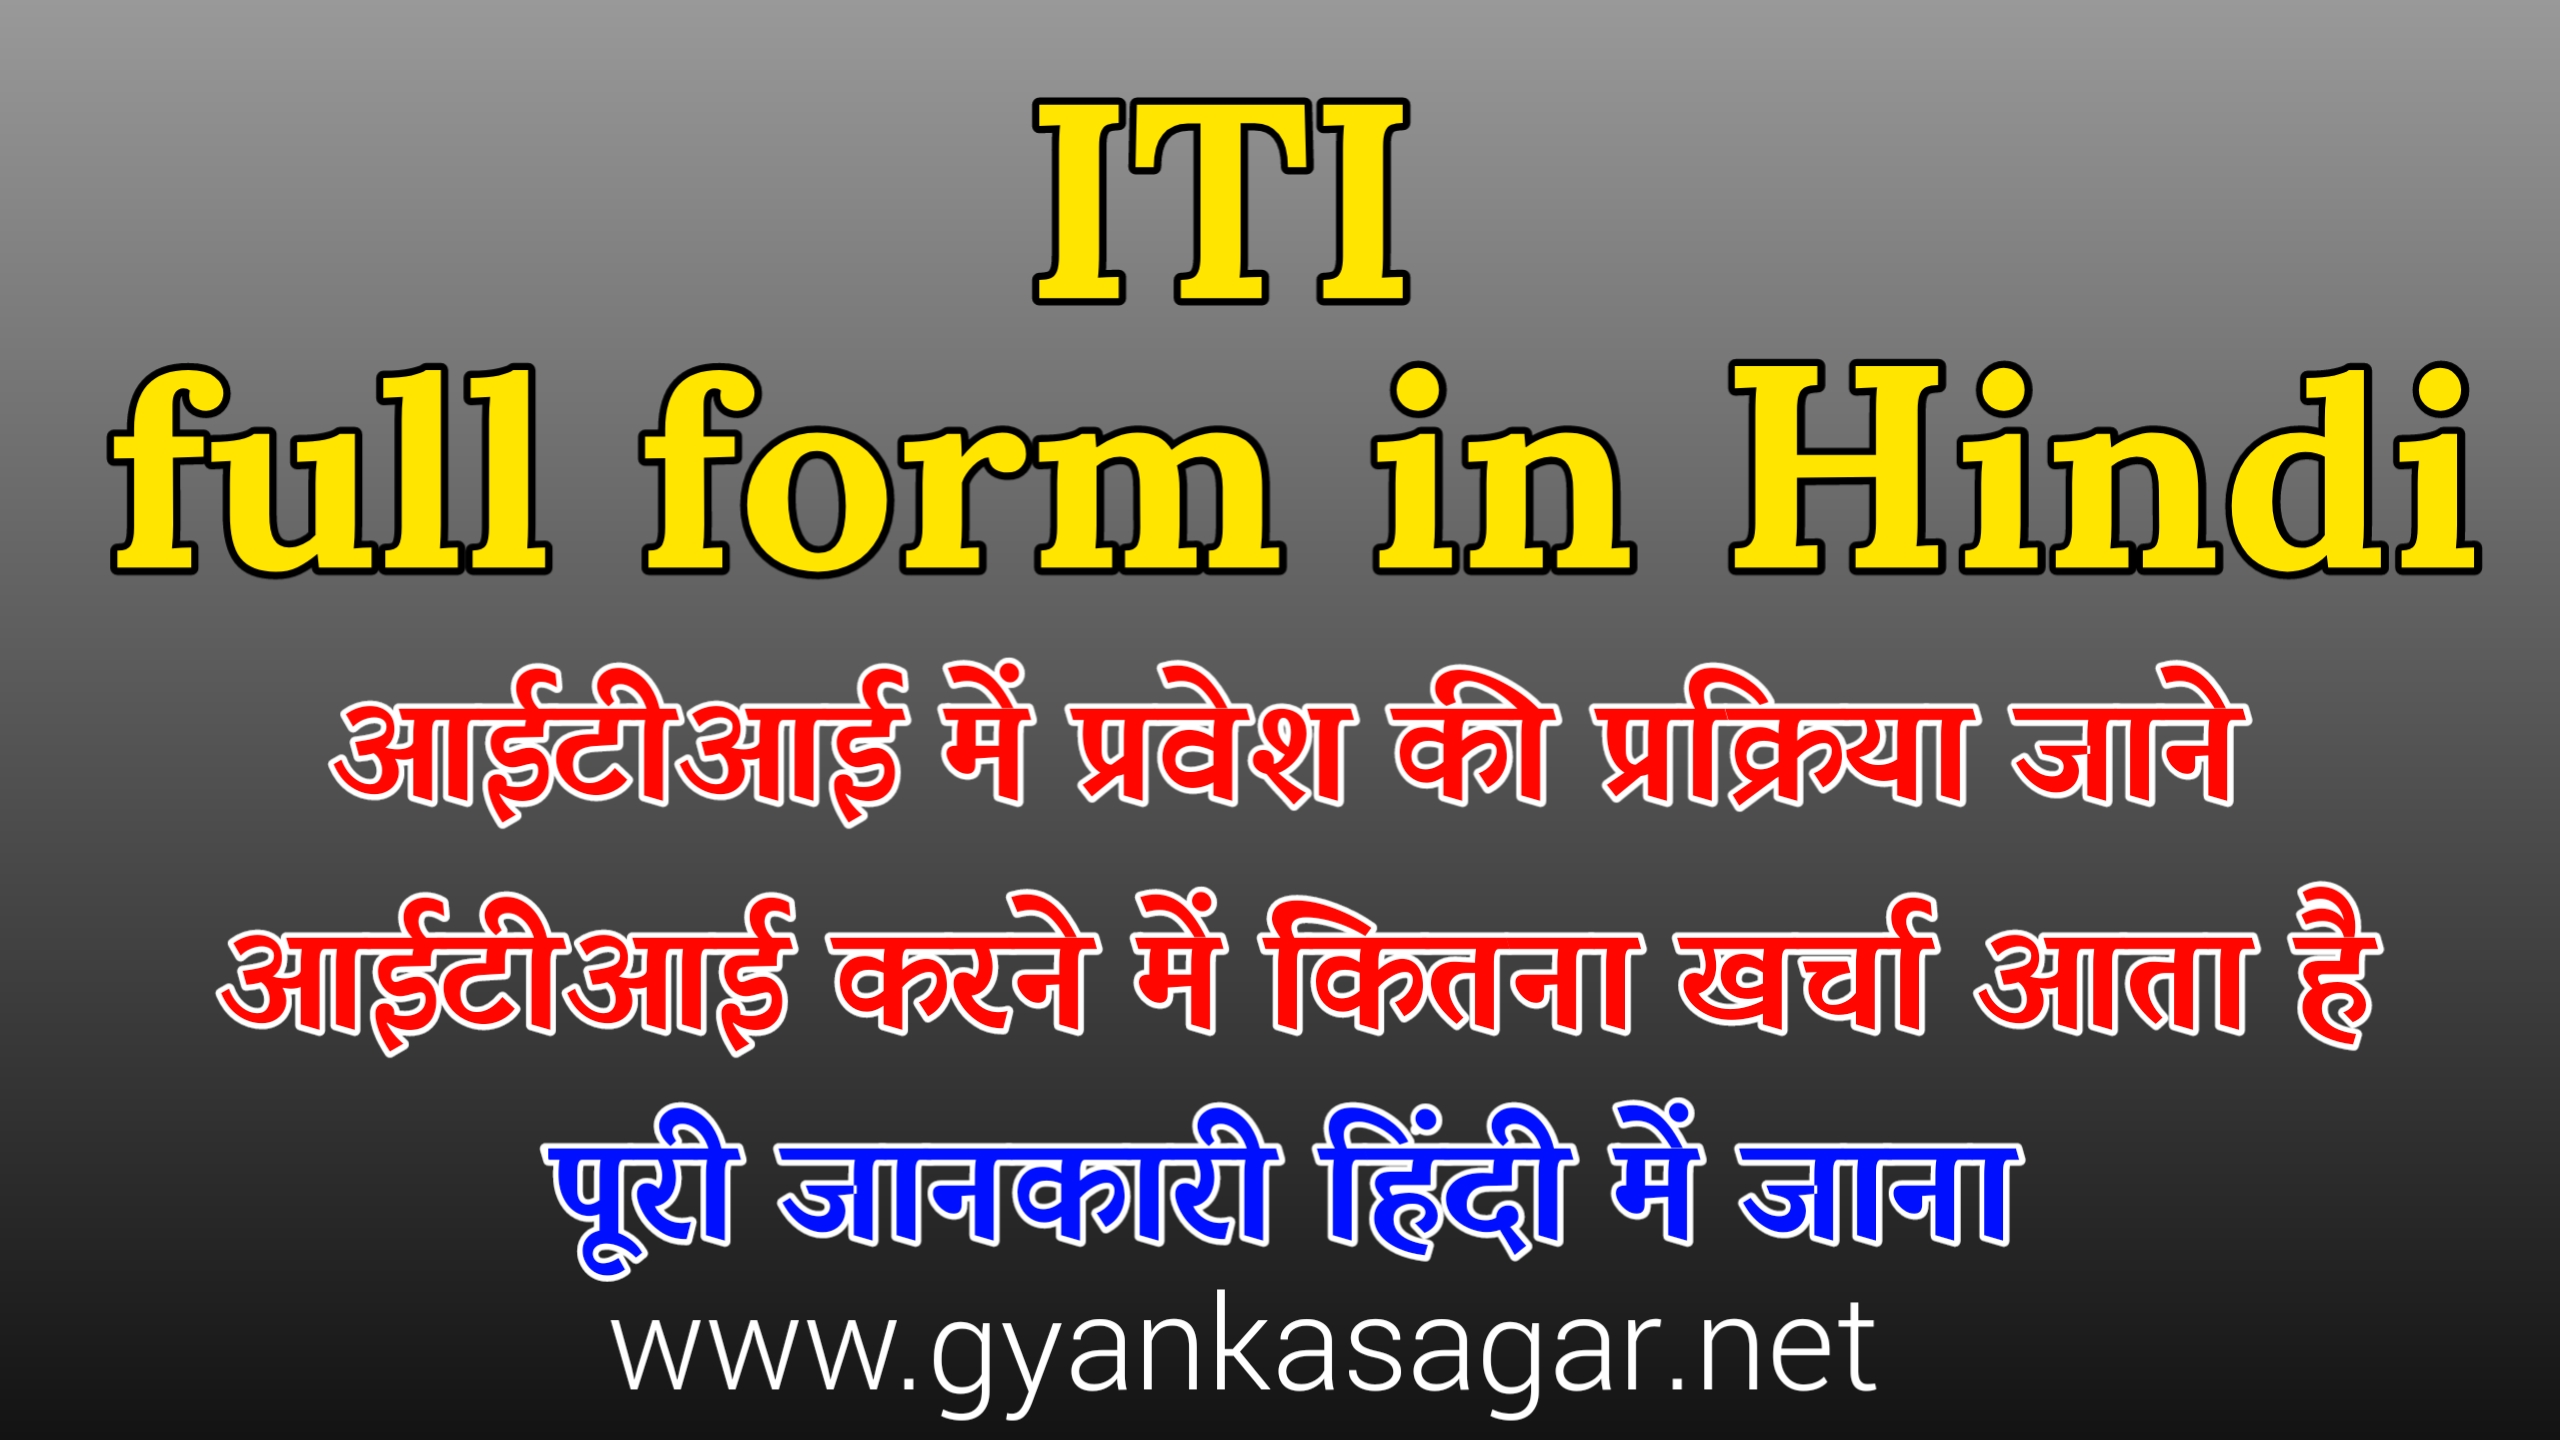 ITI full form in Hindi , आईटीआई में प्रवेश की प्रक्रिया कितने प्रकार की होती हैं , आईटीआई कोर्स कितने प्रकार के होते हैं , आईटीआई की नौकरी में कितनी सैलरी होती है